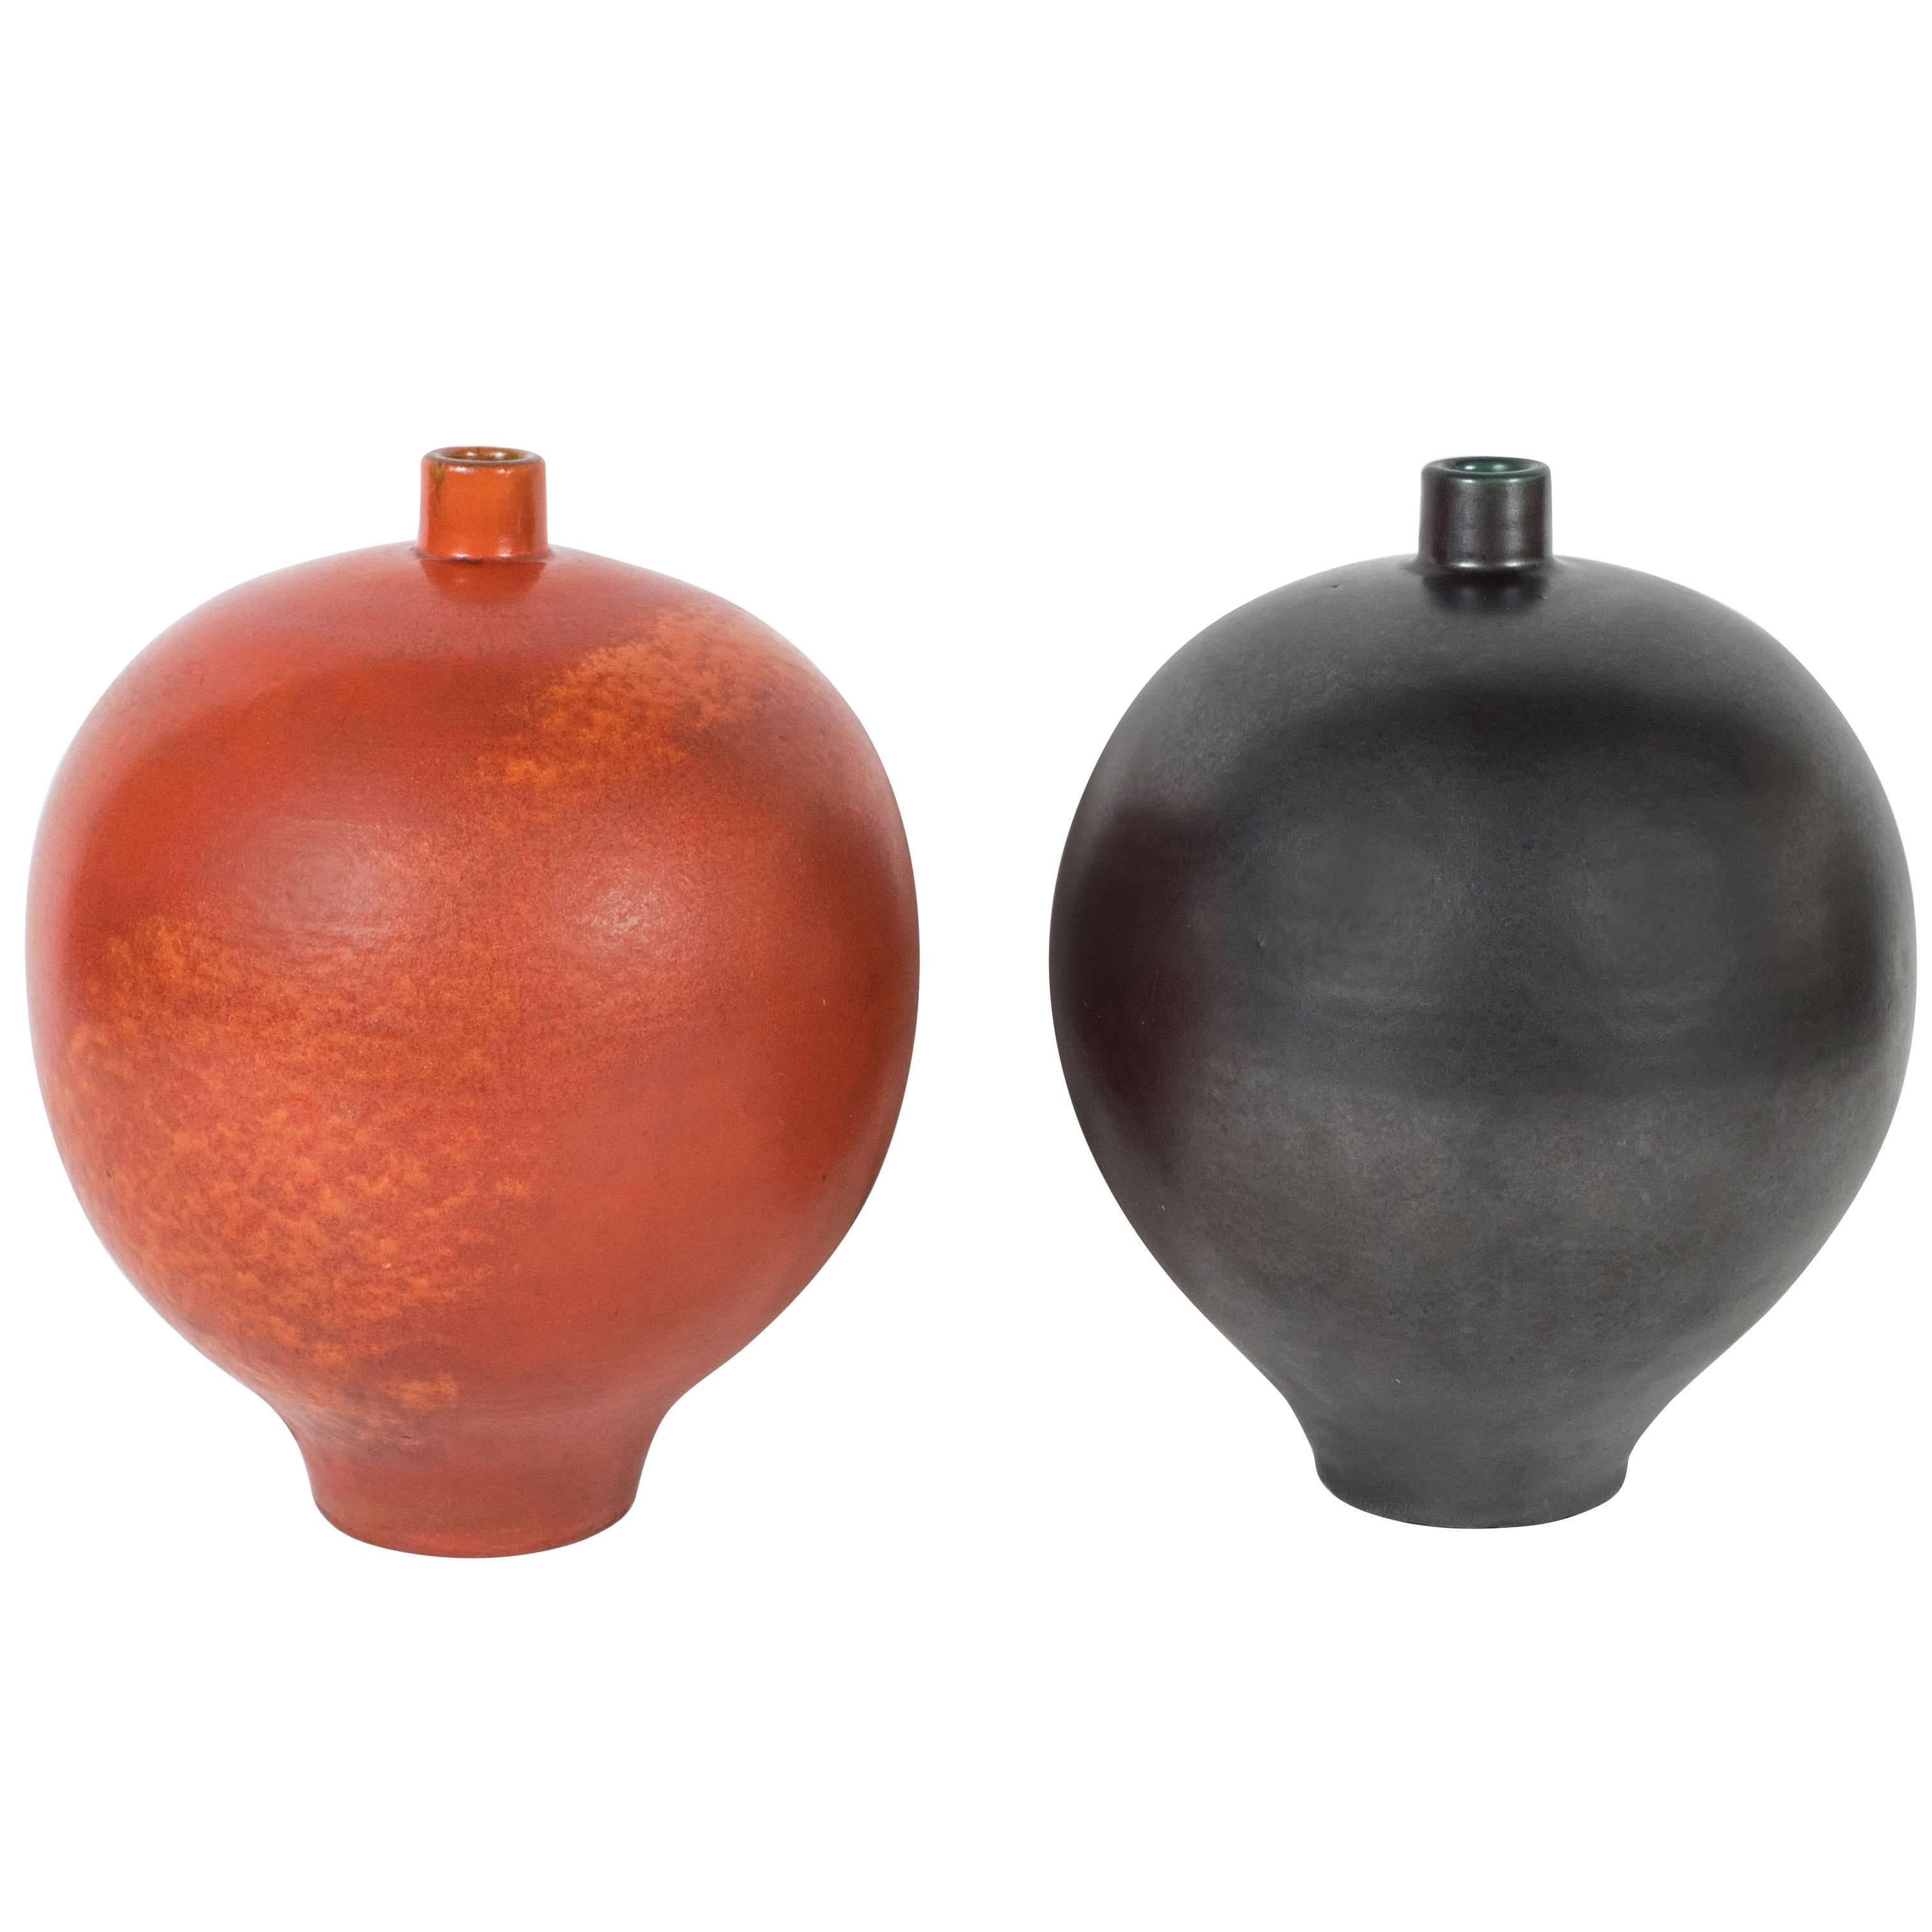 Pair of Black and Orange Primavera Vases For Sale